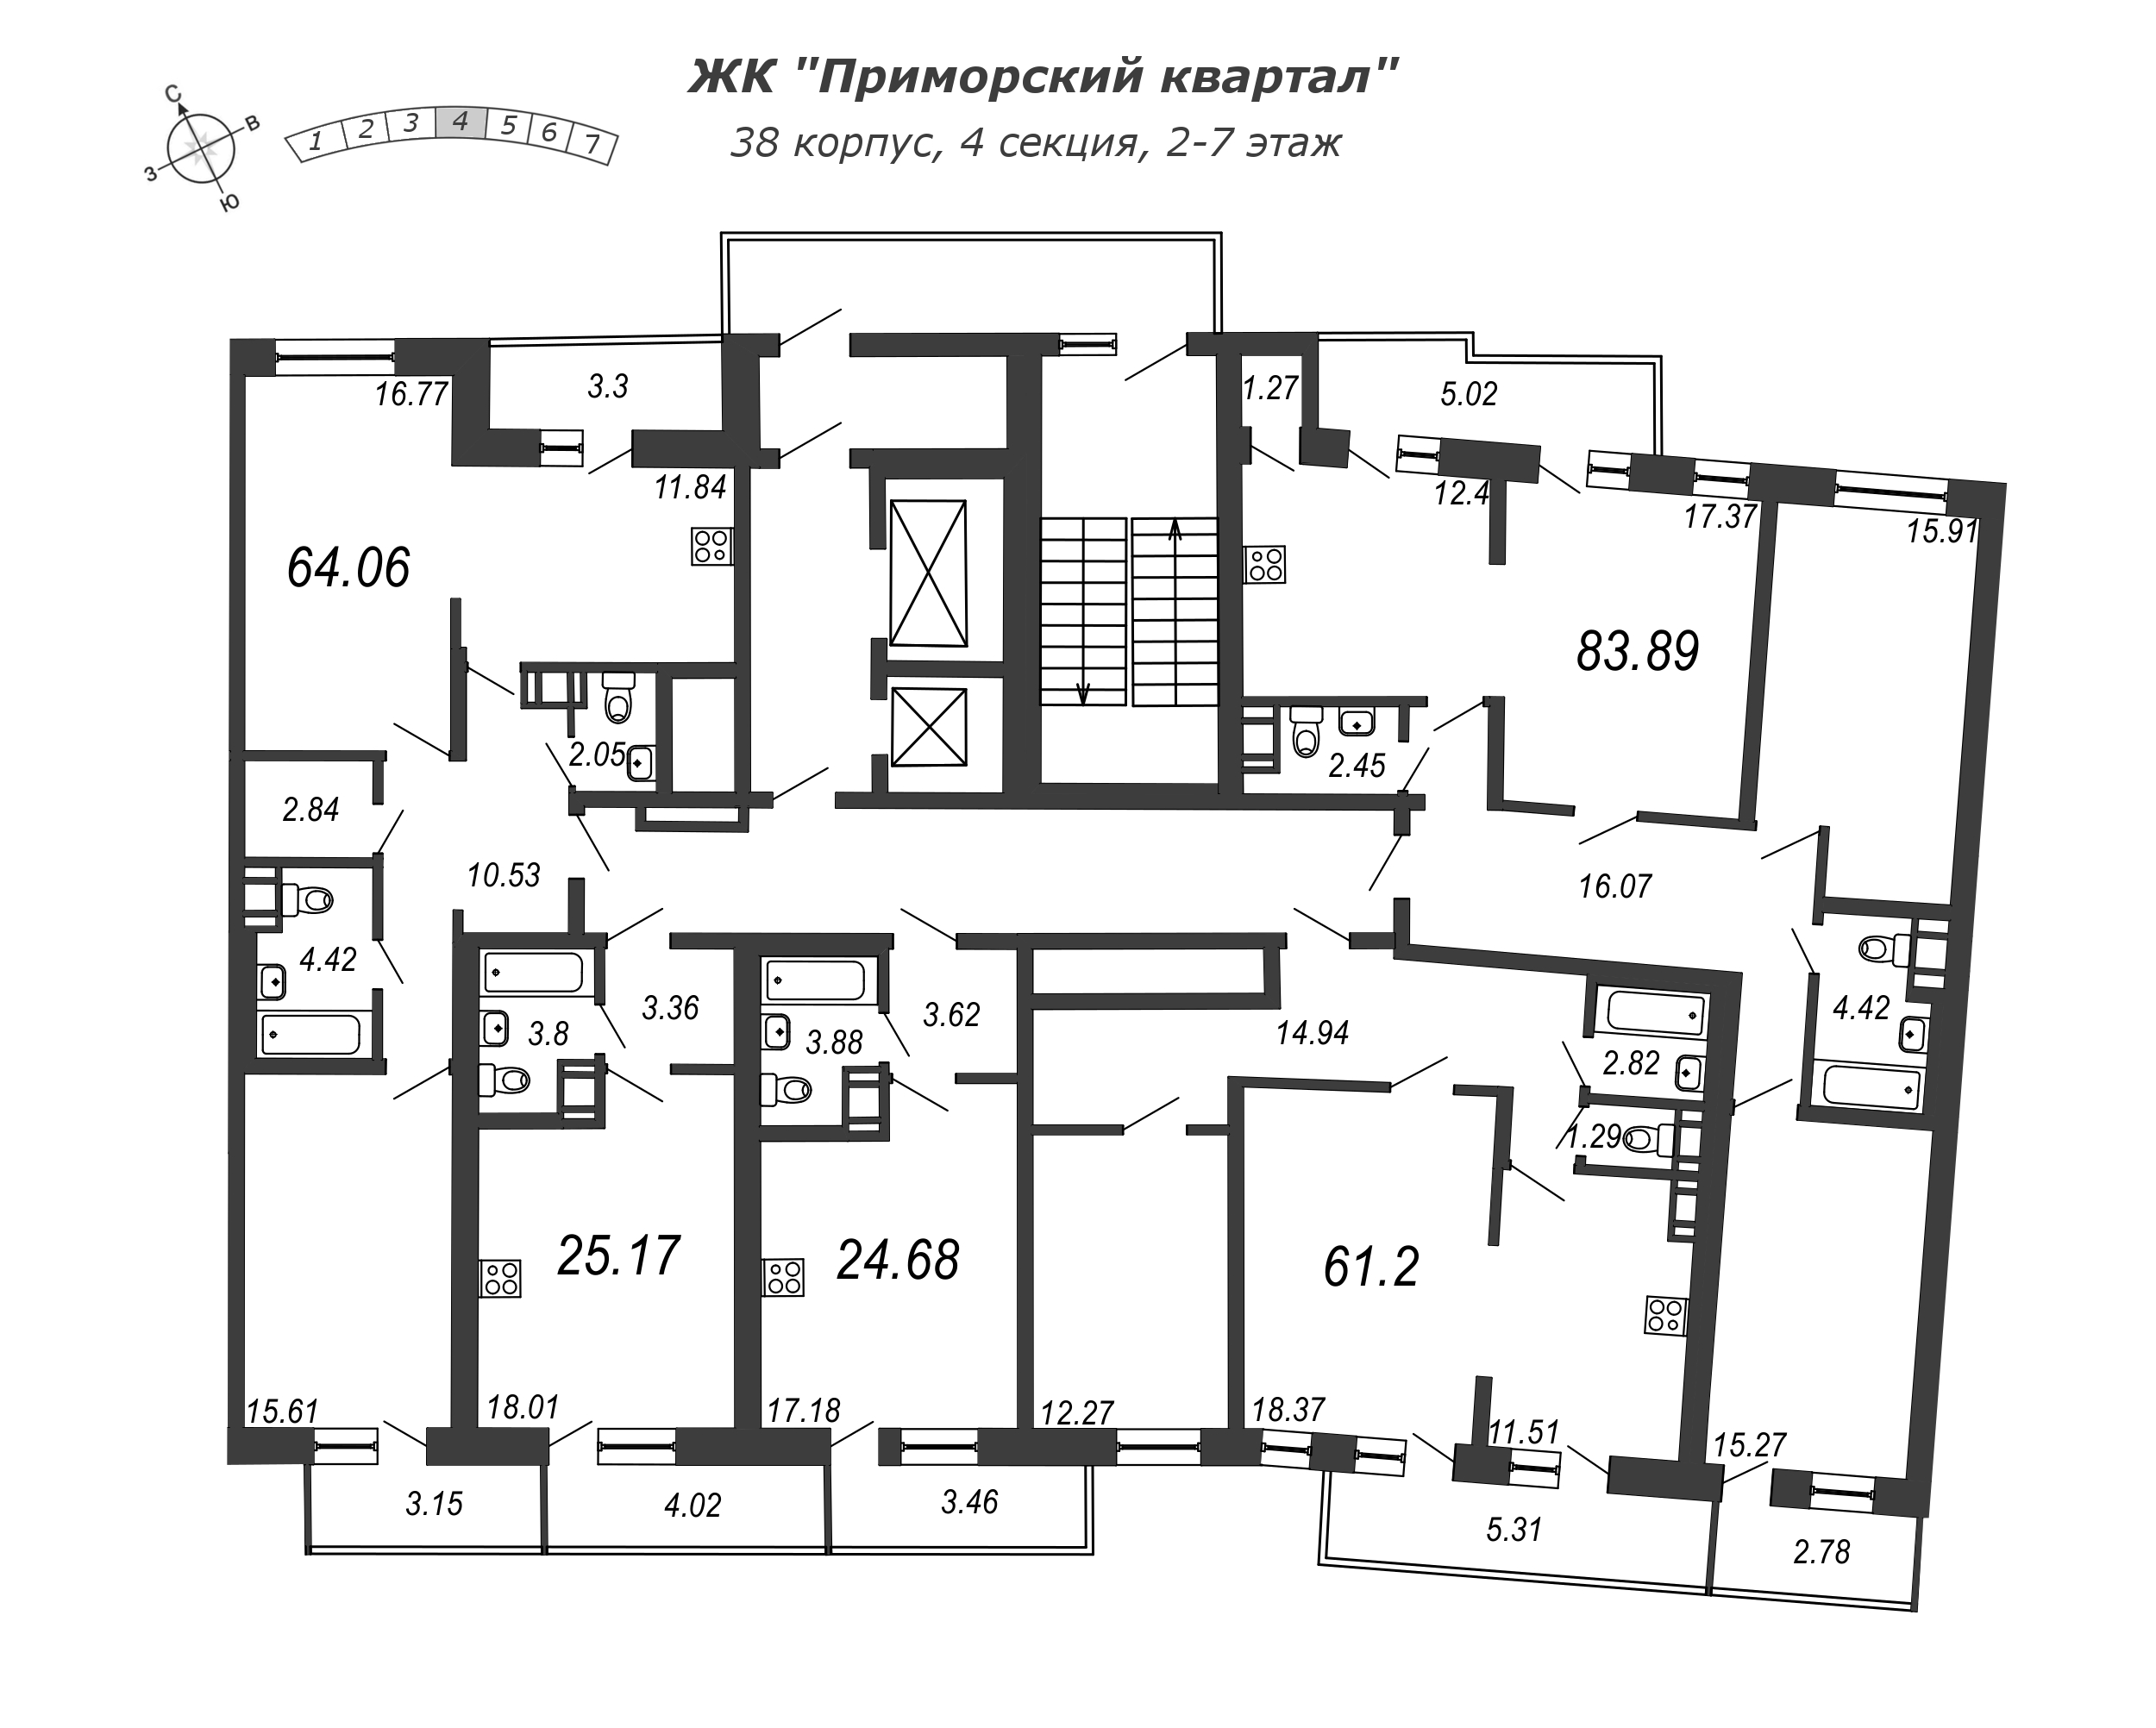 2-комнатная квартира, 61.2 м² в ЖК "Приморский квартал" - планировка этажа